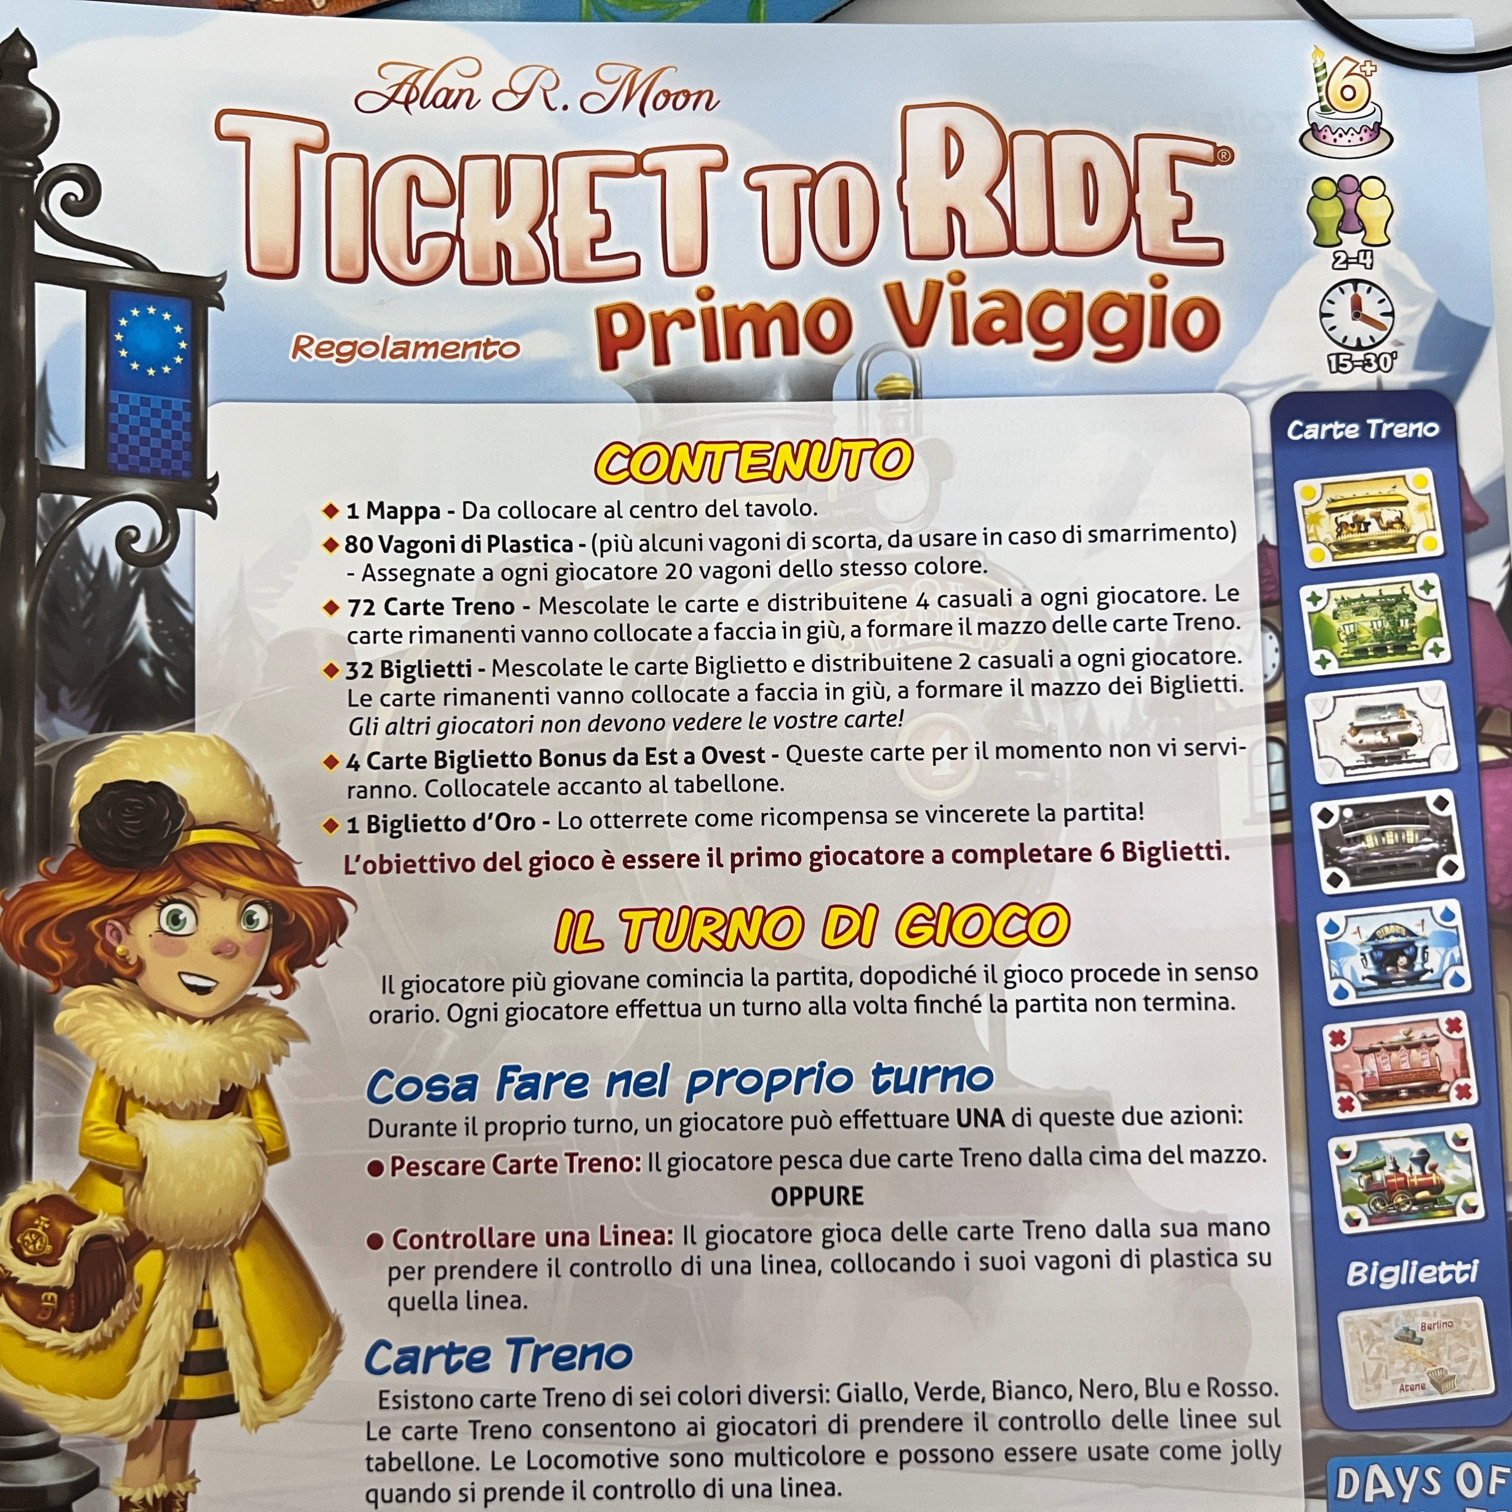 regolamento ticket to ride primo viaggio 1